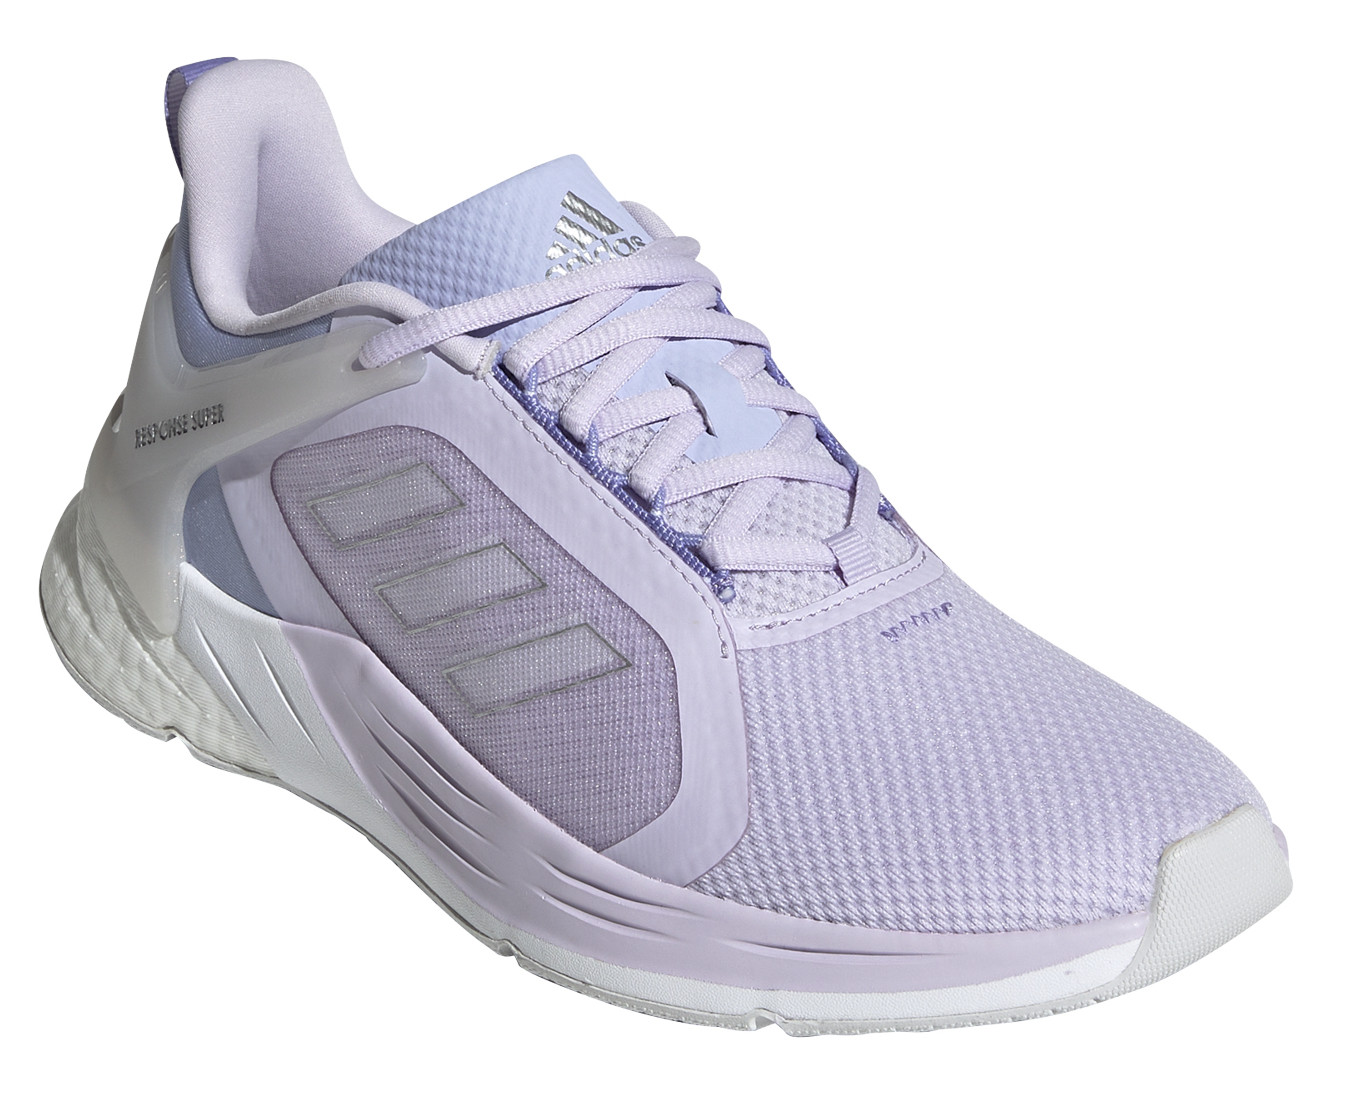 Dámské boty Adidas Response Super 2.0 Velikost bot (EU): 38 (2/3) / Barva: fialová